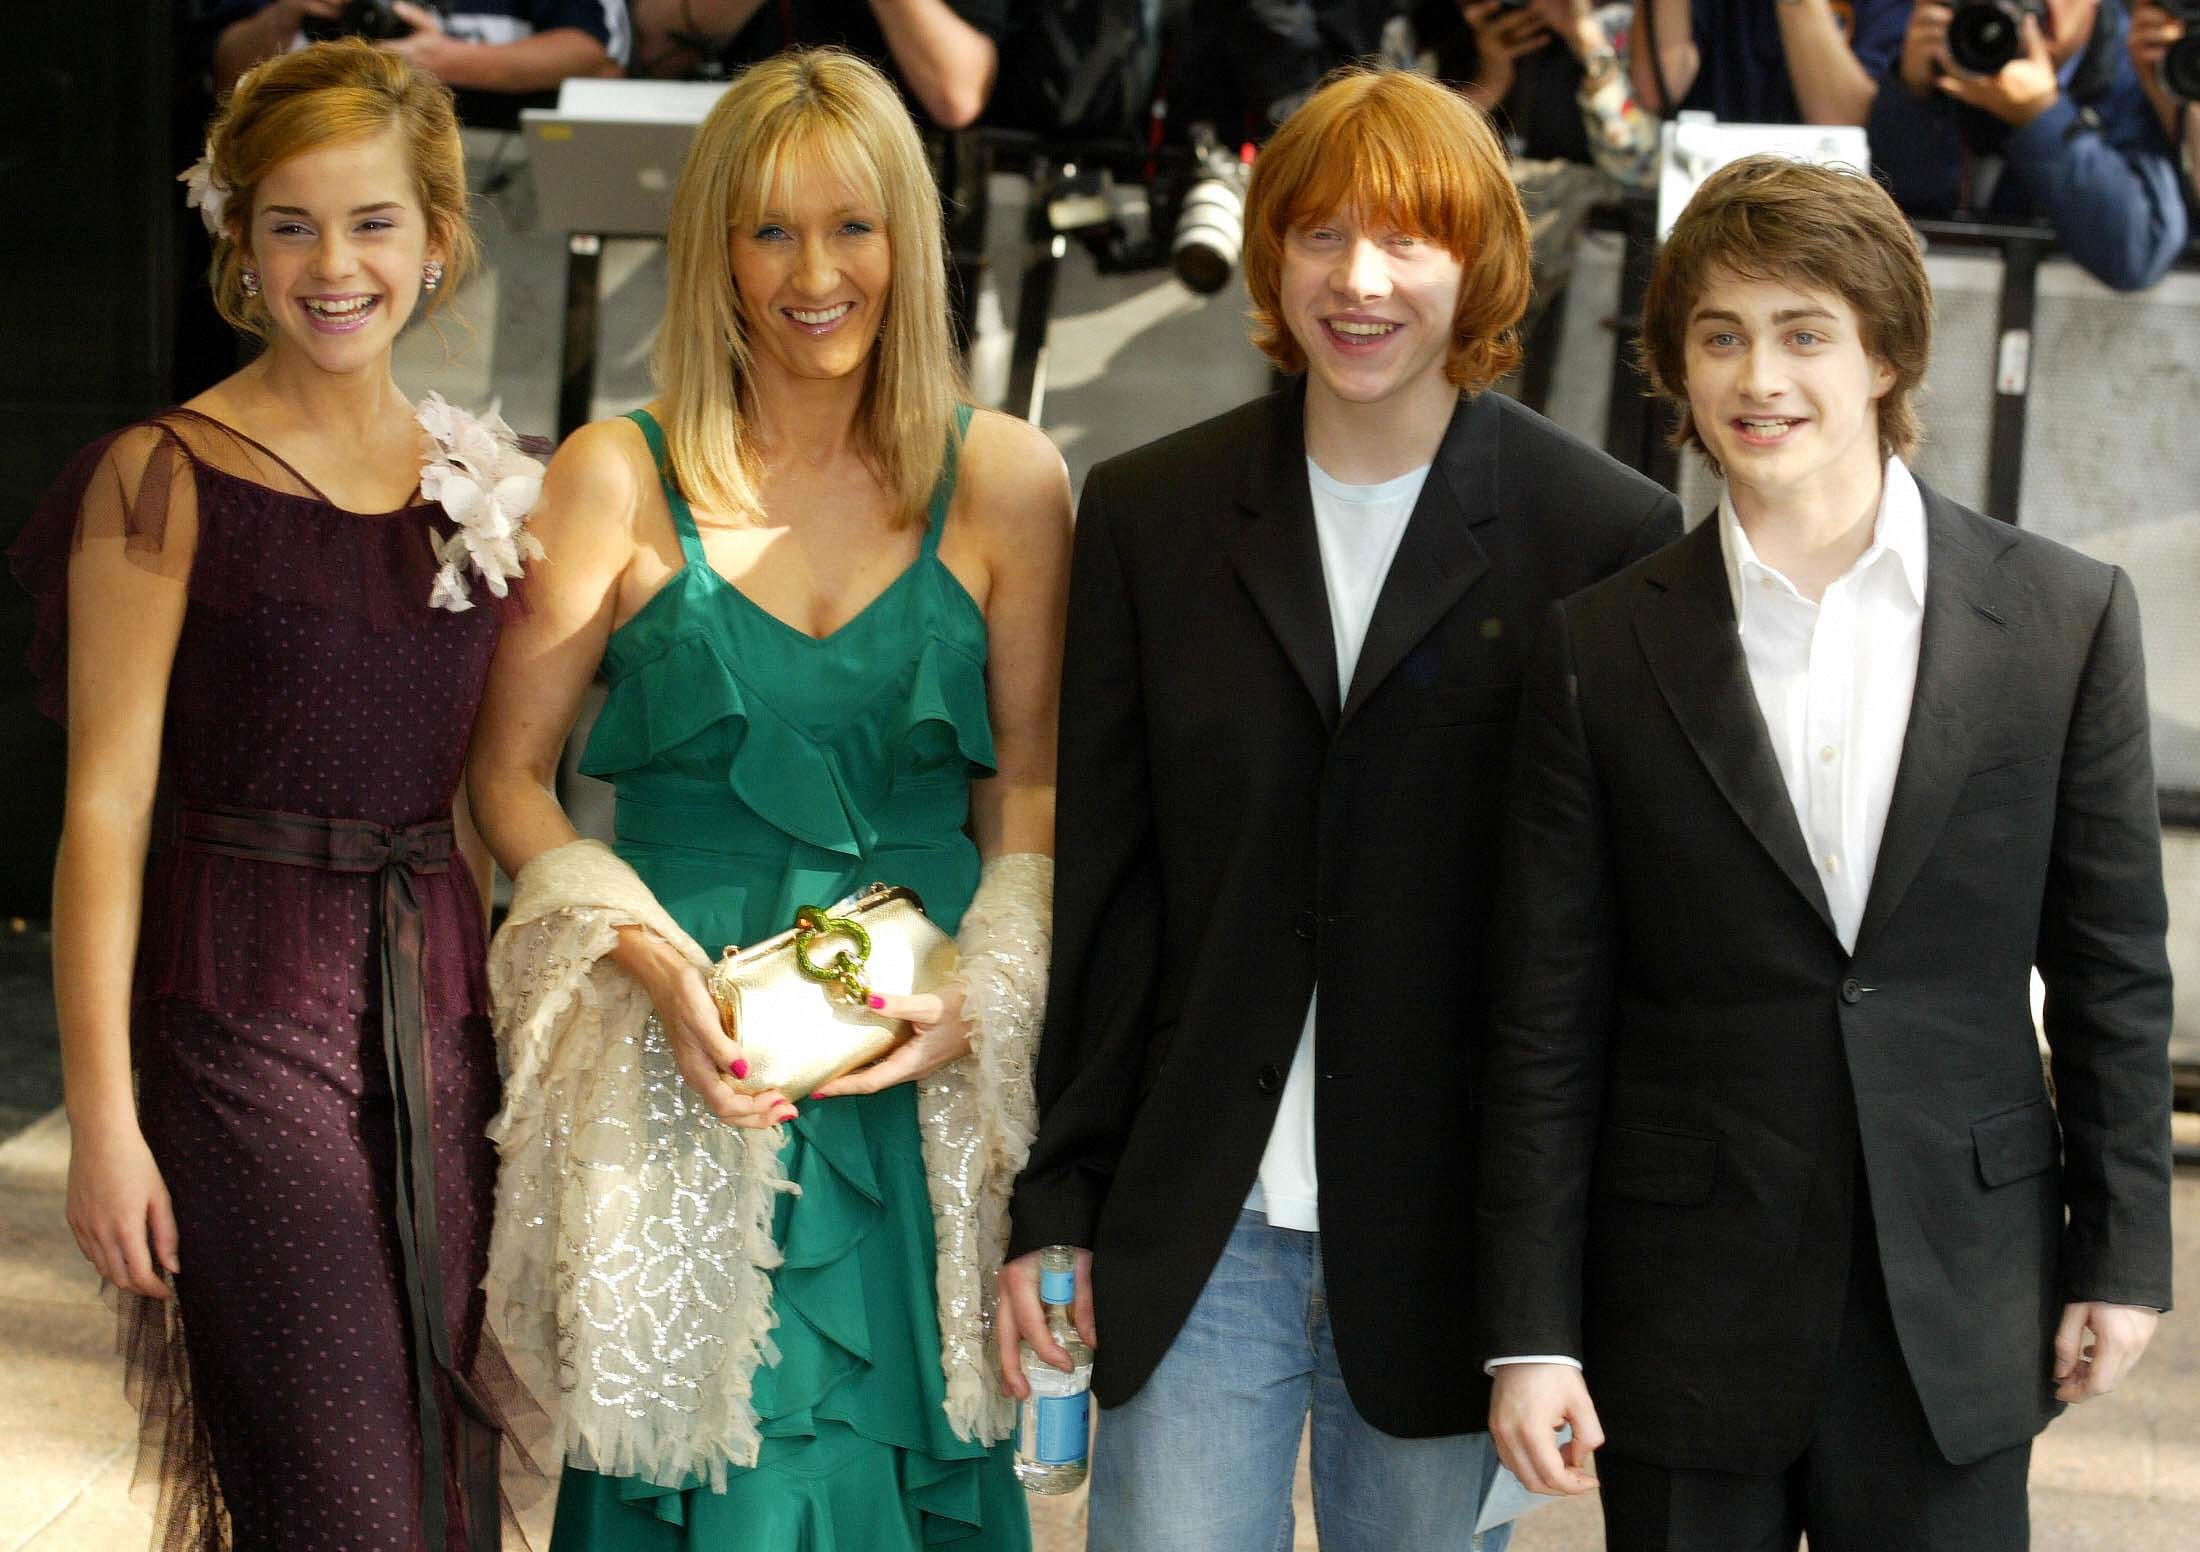 Com pequena participação de J.K. Rowling, especial Harry Potter